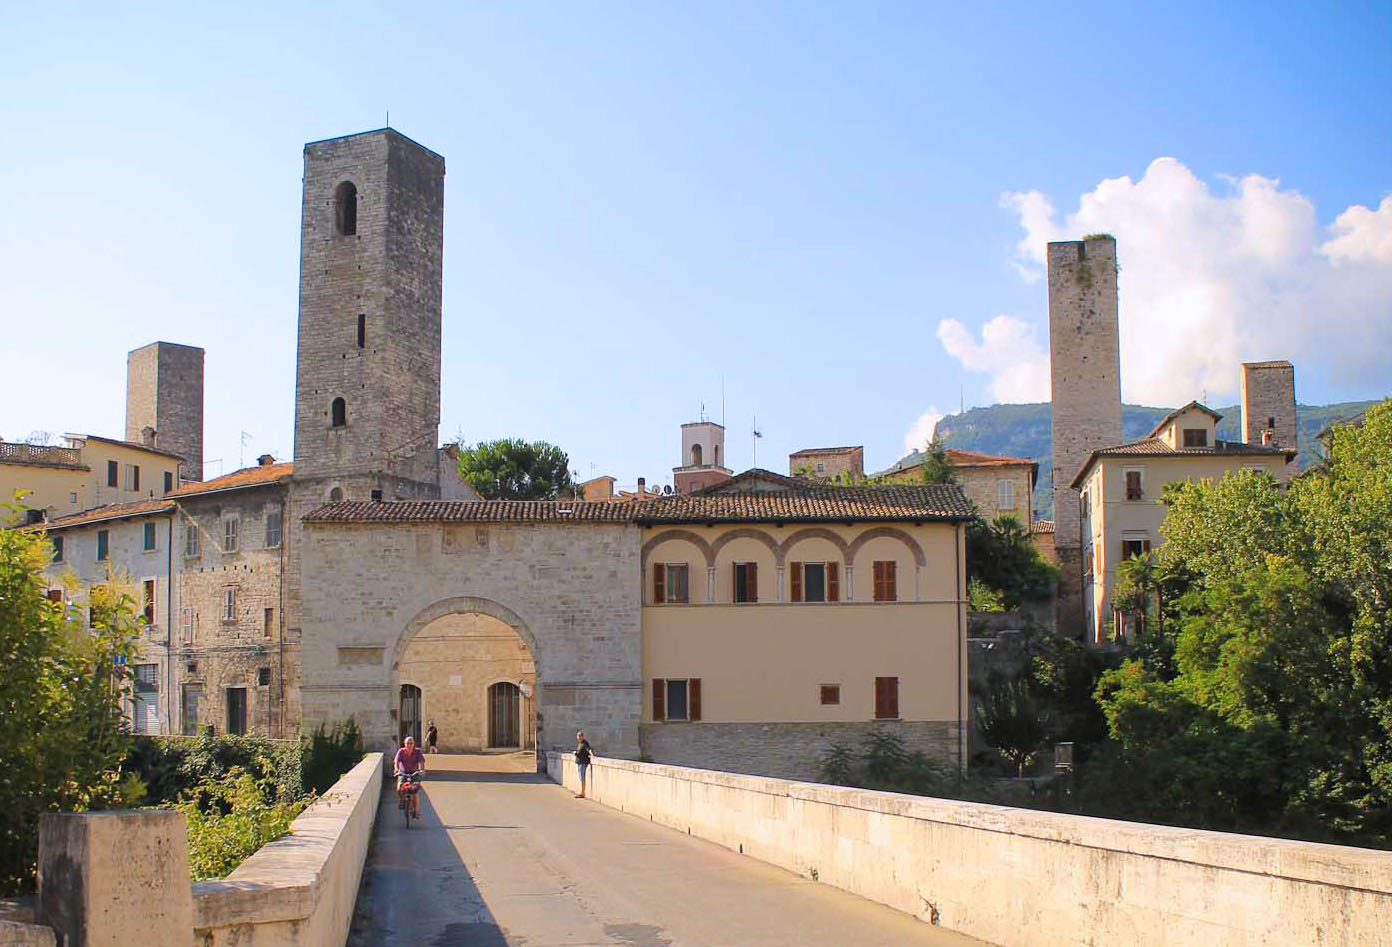 The Medieval Splendor of Ascoli Piceno - The Italian Tribune